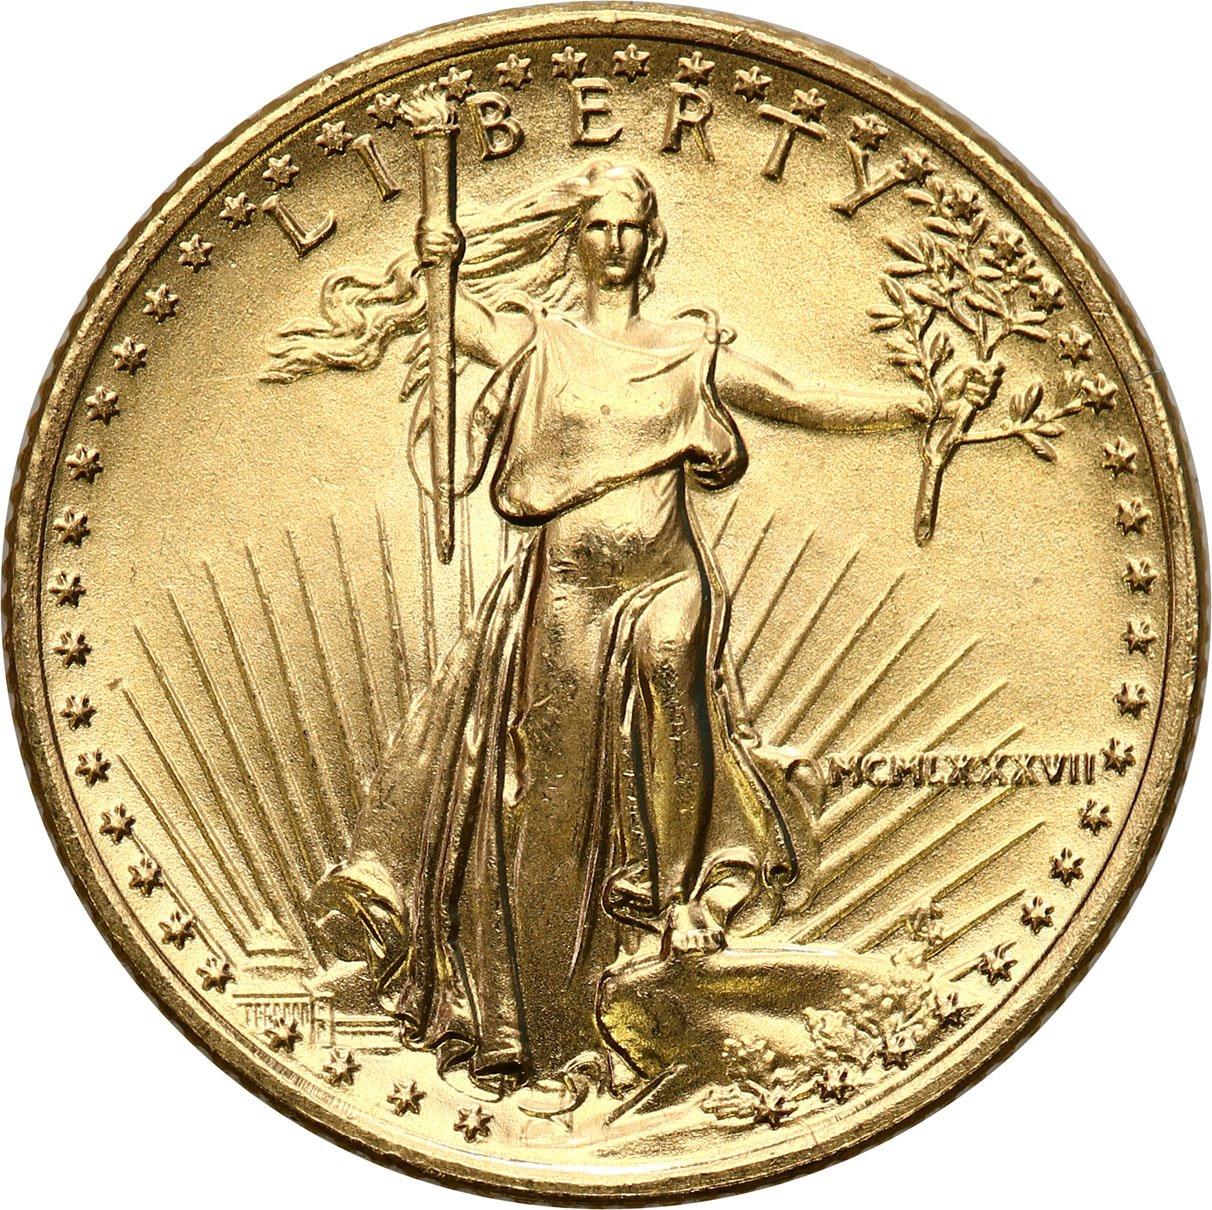 USA. Złote 5 dolarów 2017 - 1/10 uncji złota